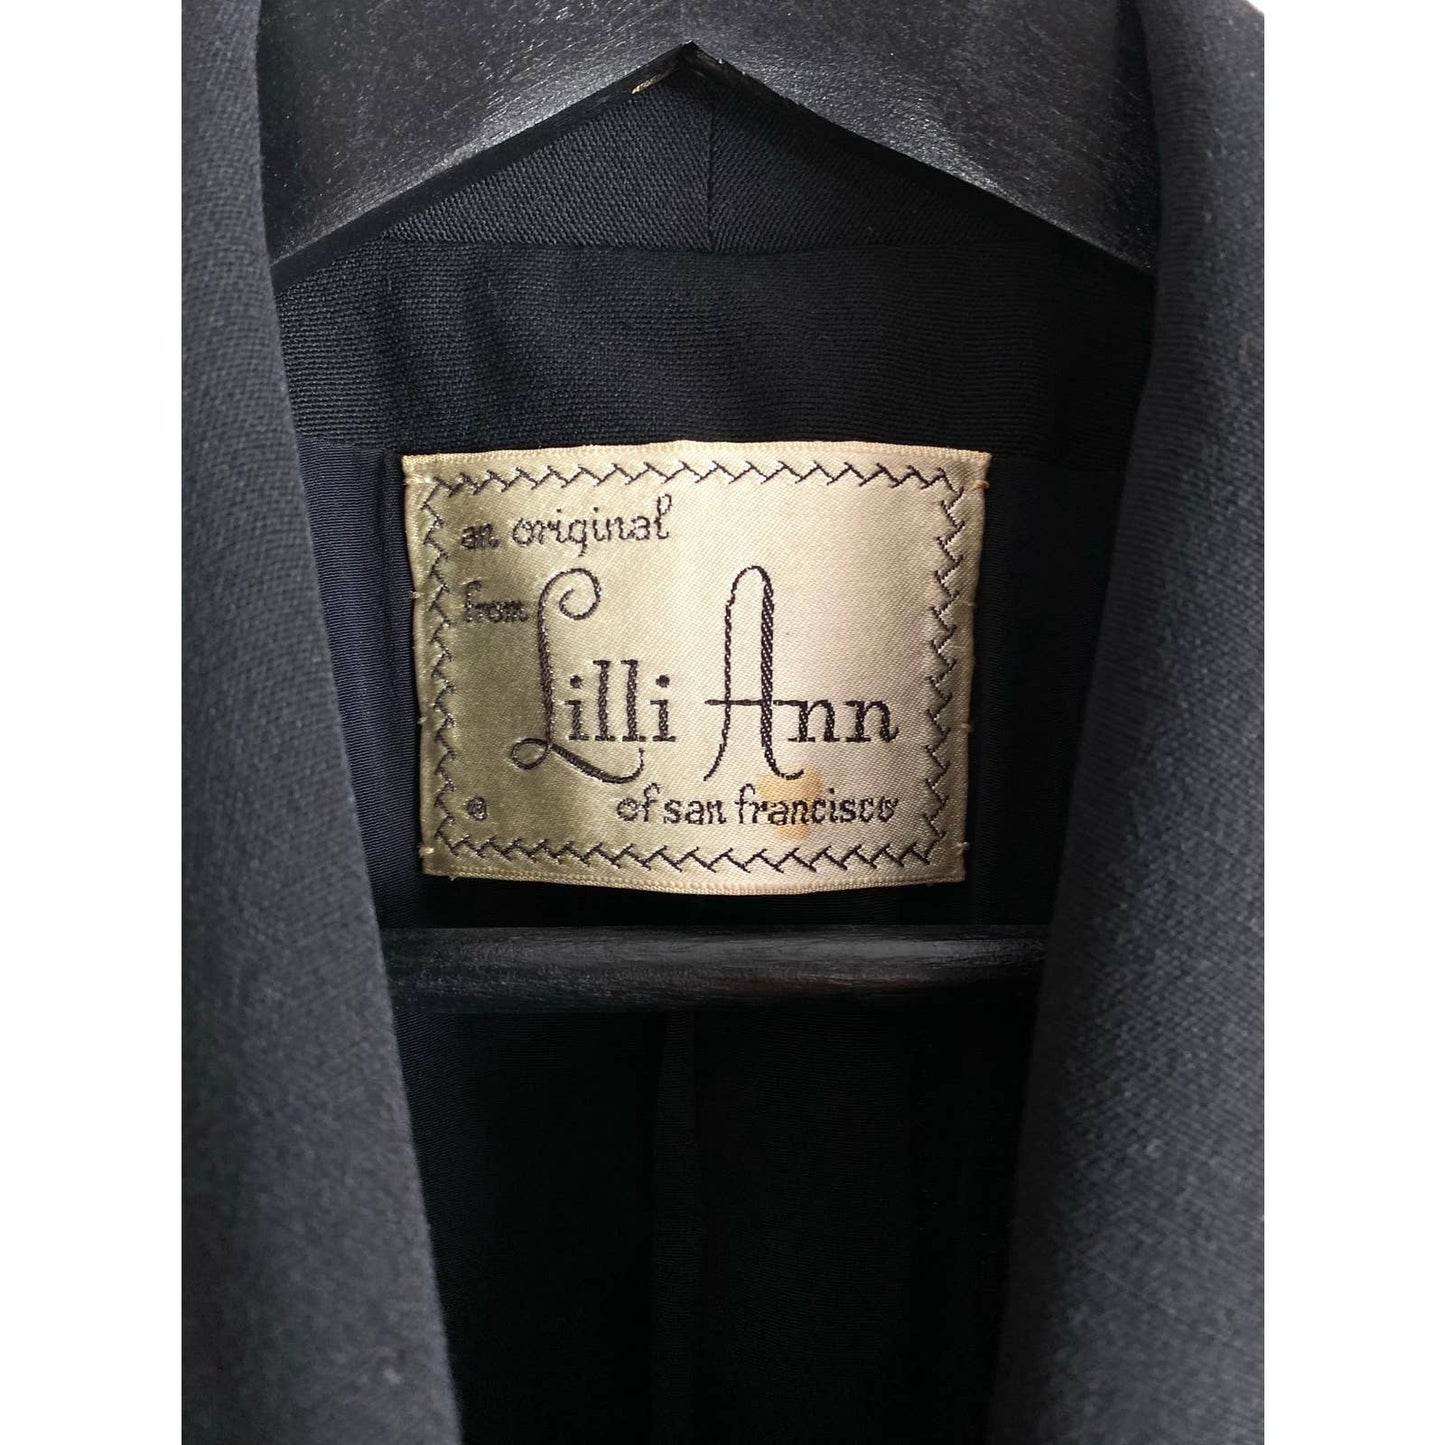 Vintage 1940s Lilli Ann Black Peplum Jacket M